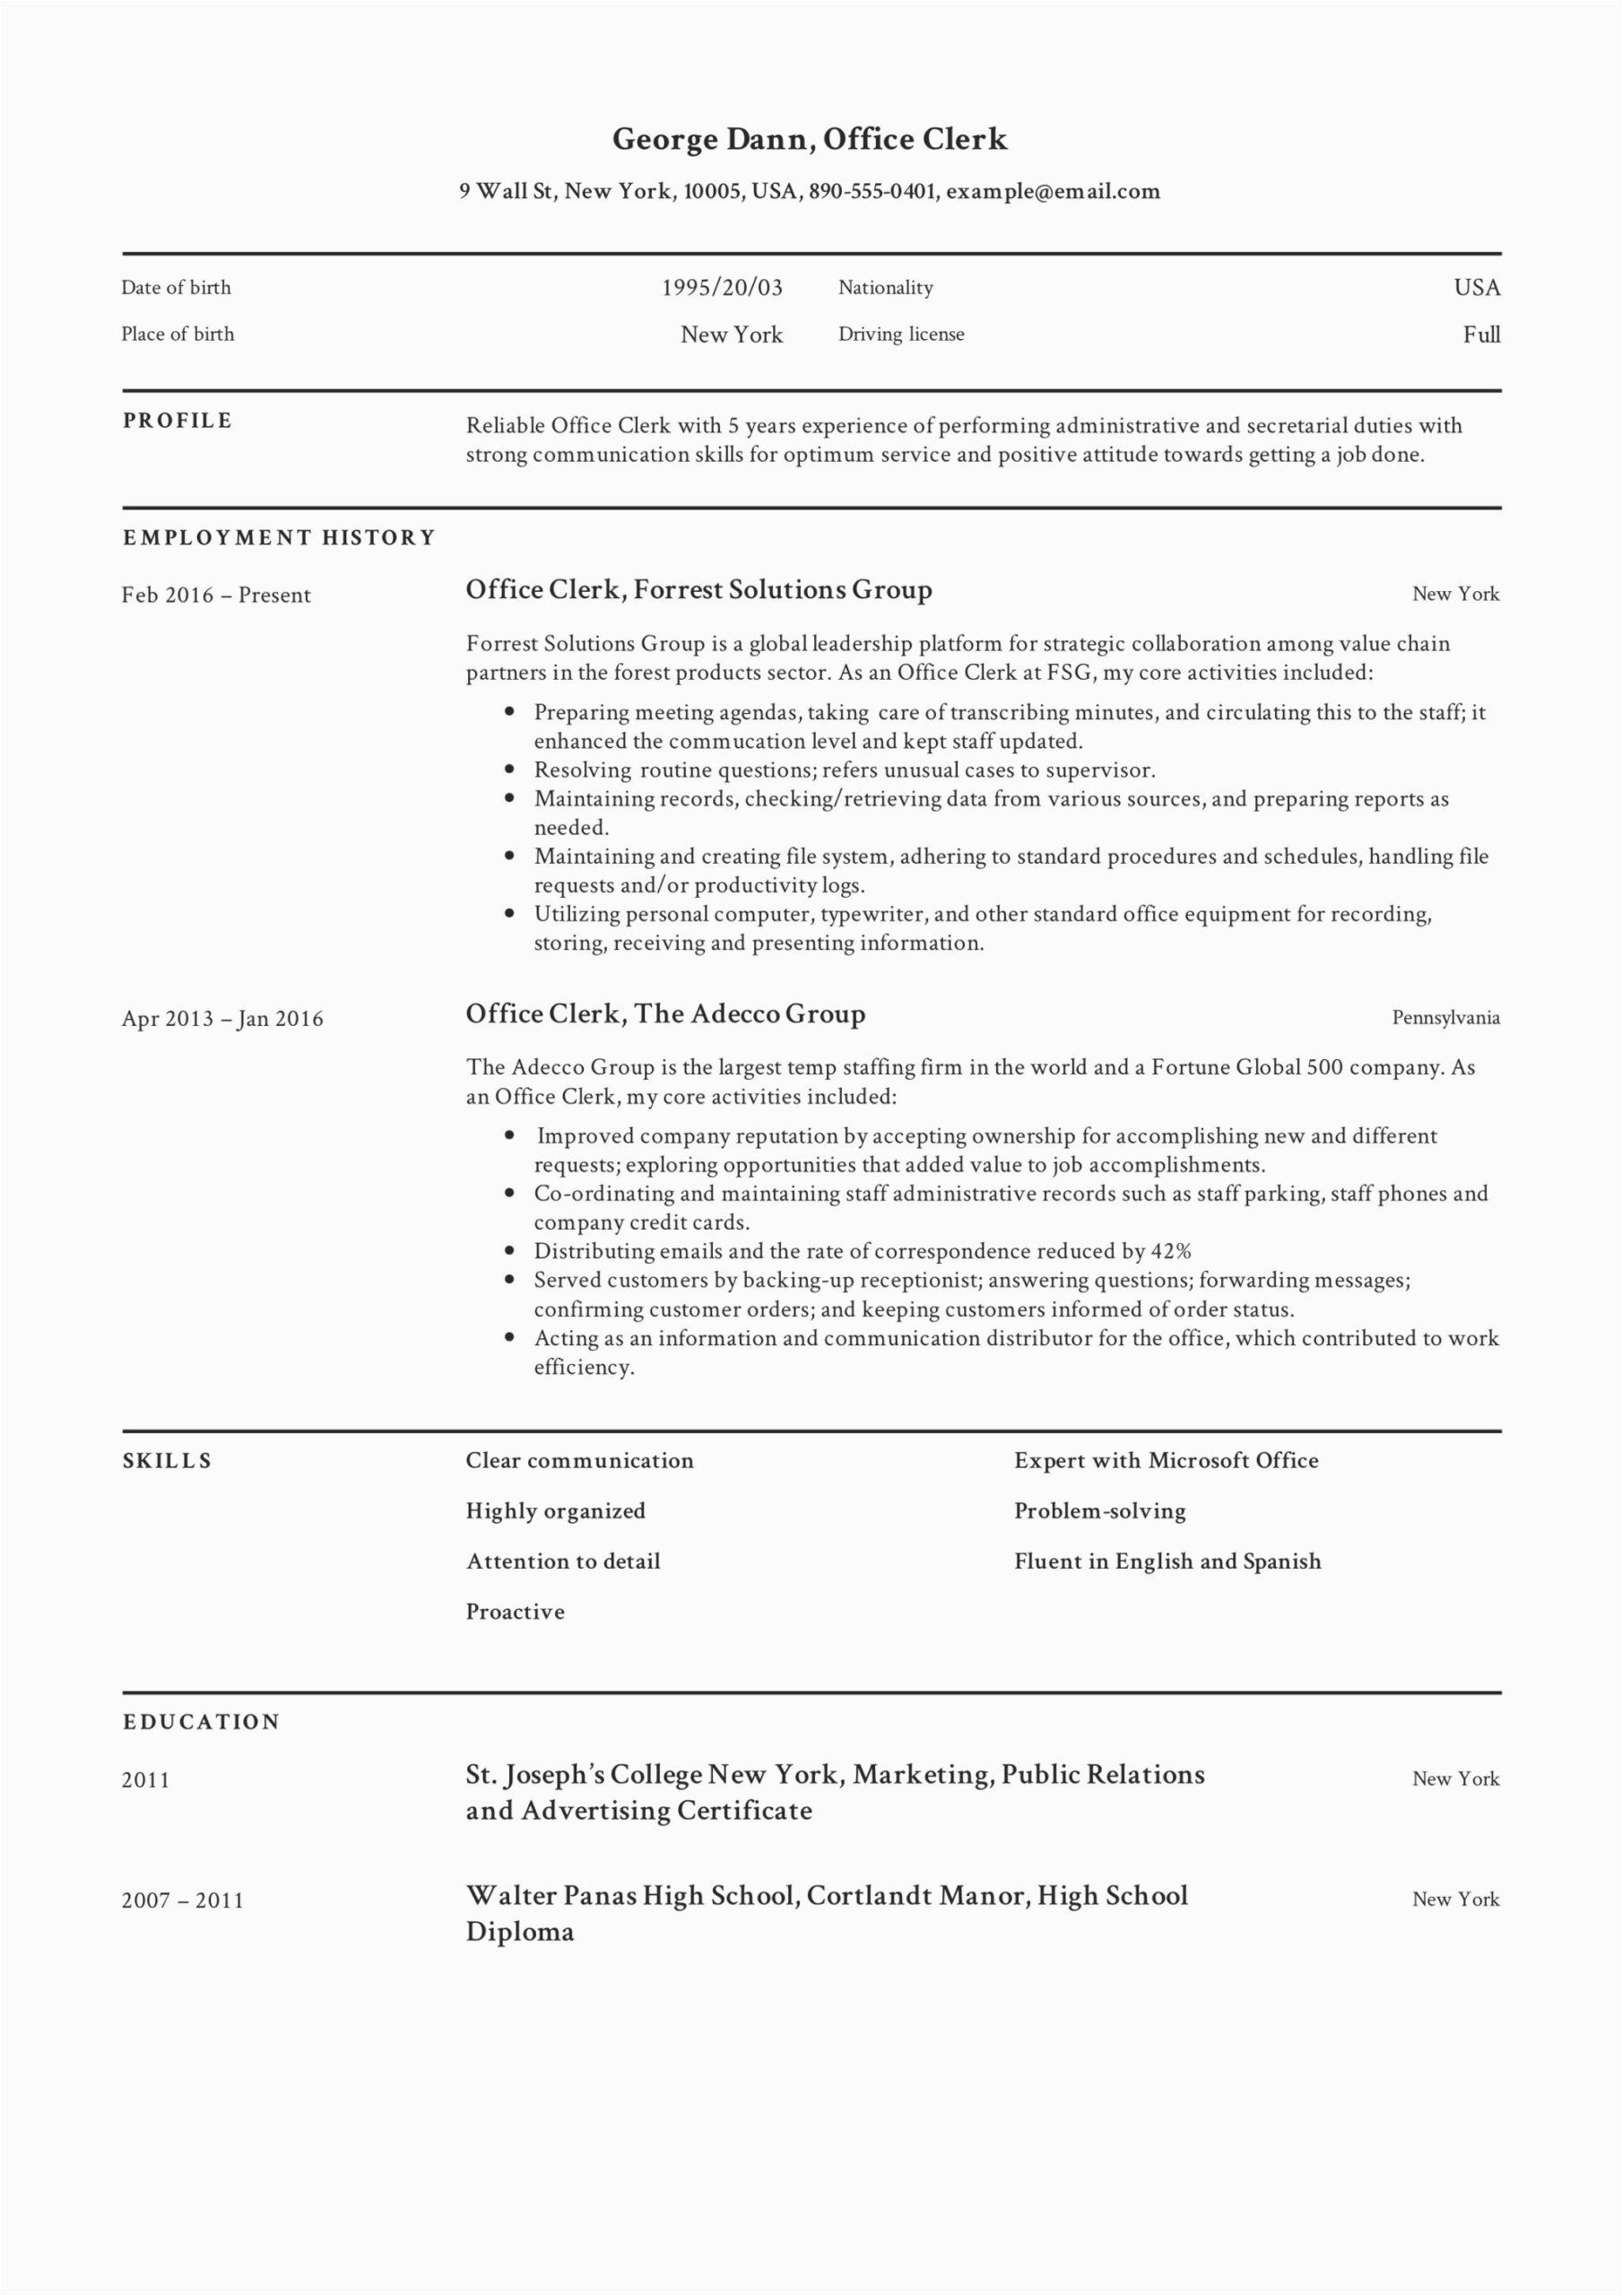 Sample Resume for Office Clerk Position Full Guide Fice Clerk Resume [ 12] Samples Pdf